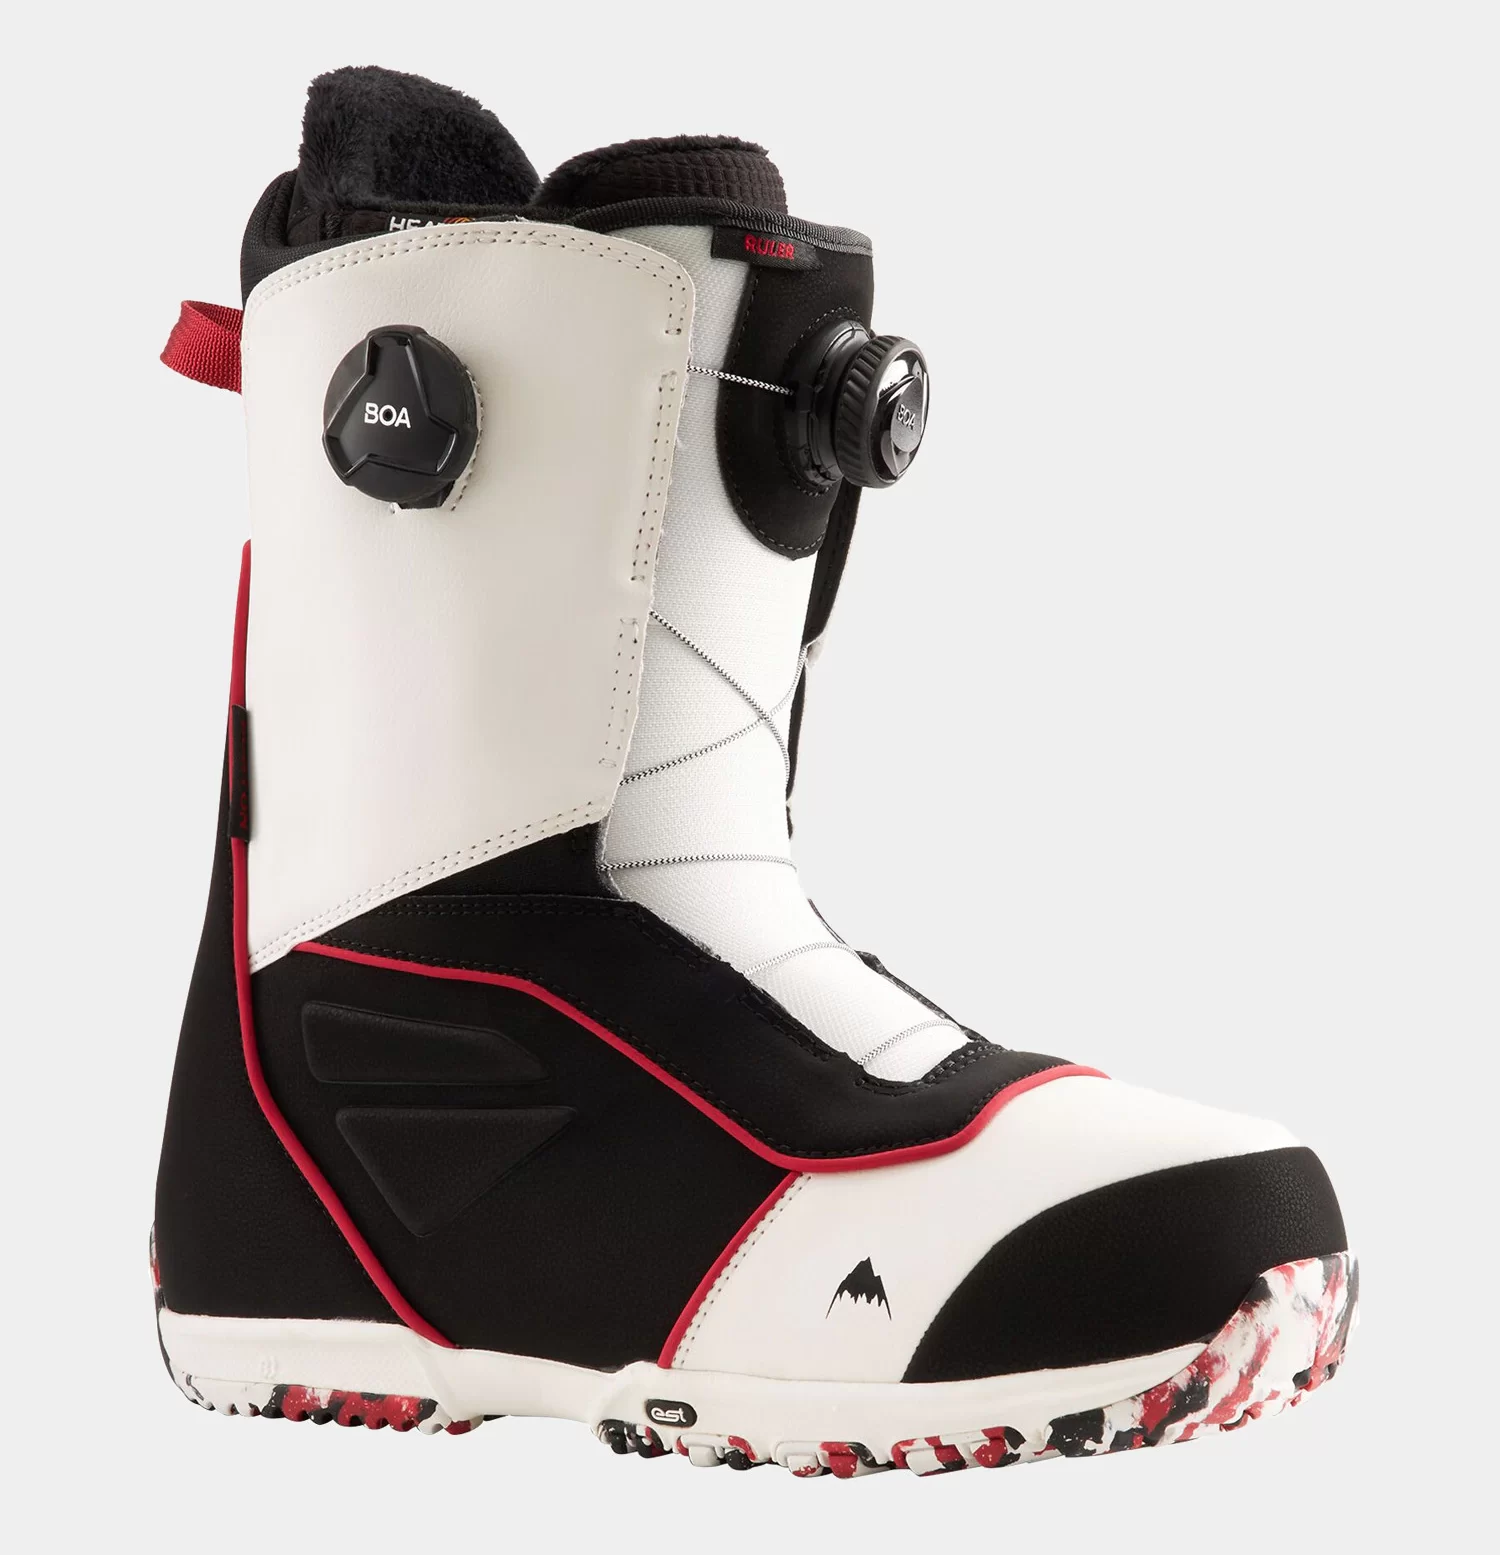 1257734-burton-ruler-boa-snowboard-cipk-white-black-red-w1920w